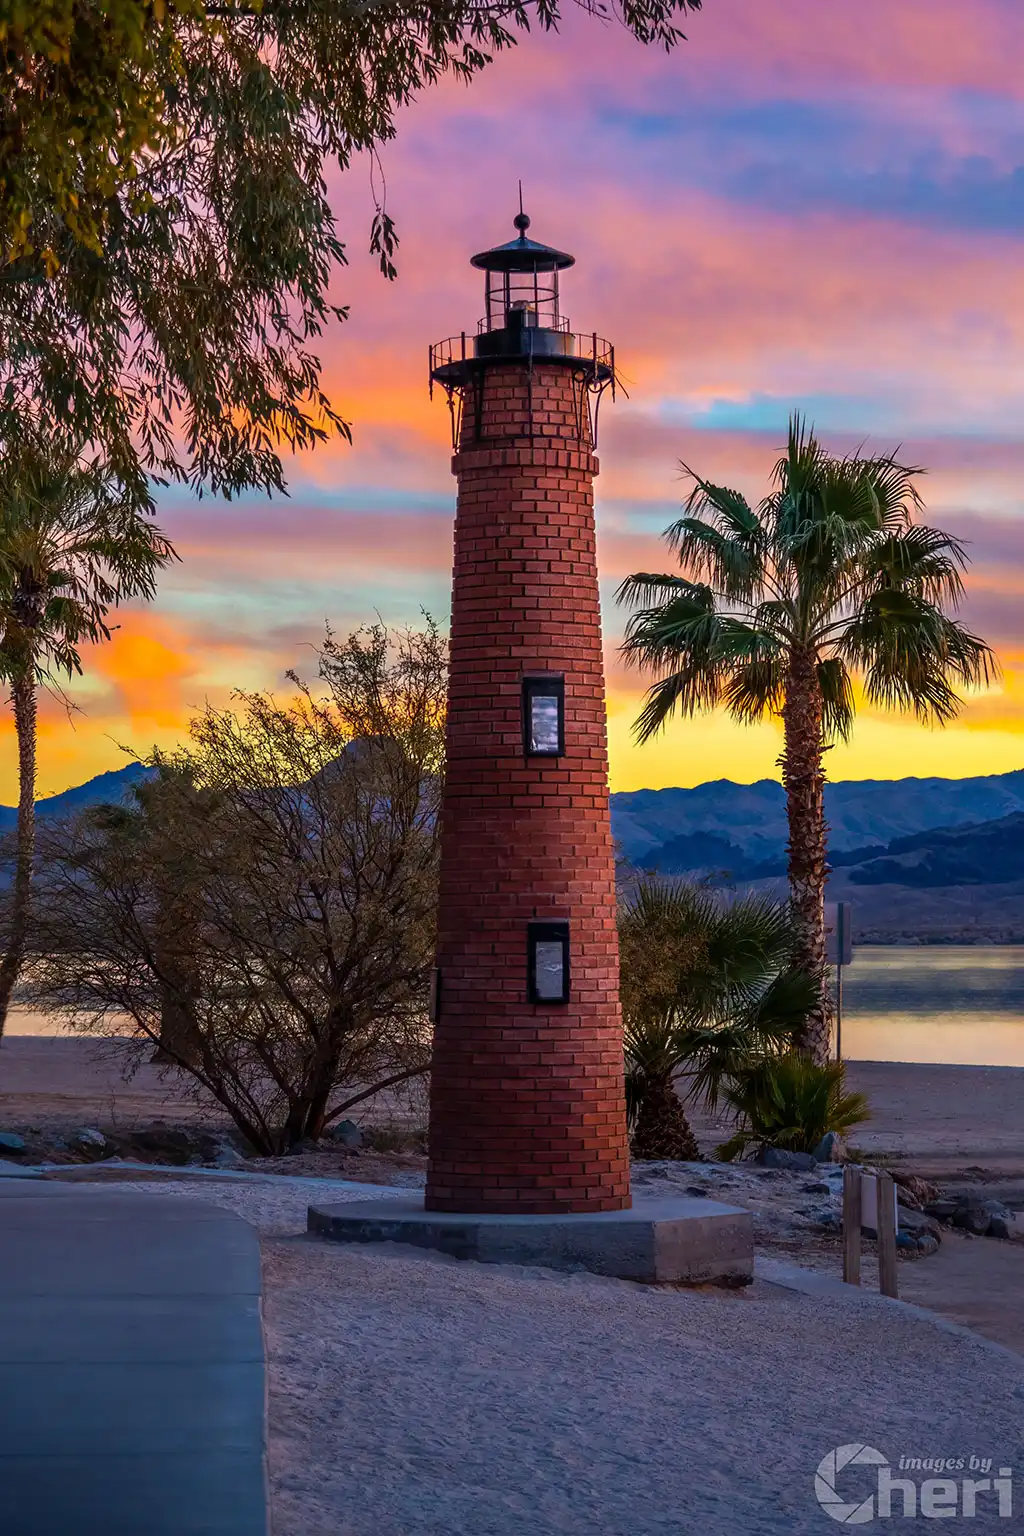 Lighthouse Glow: Lake Havasu Lighthouse at Sunset